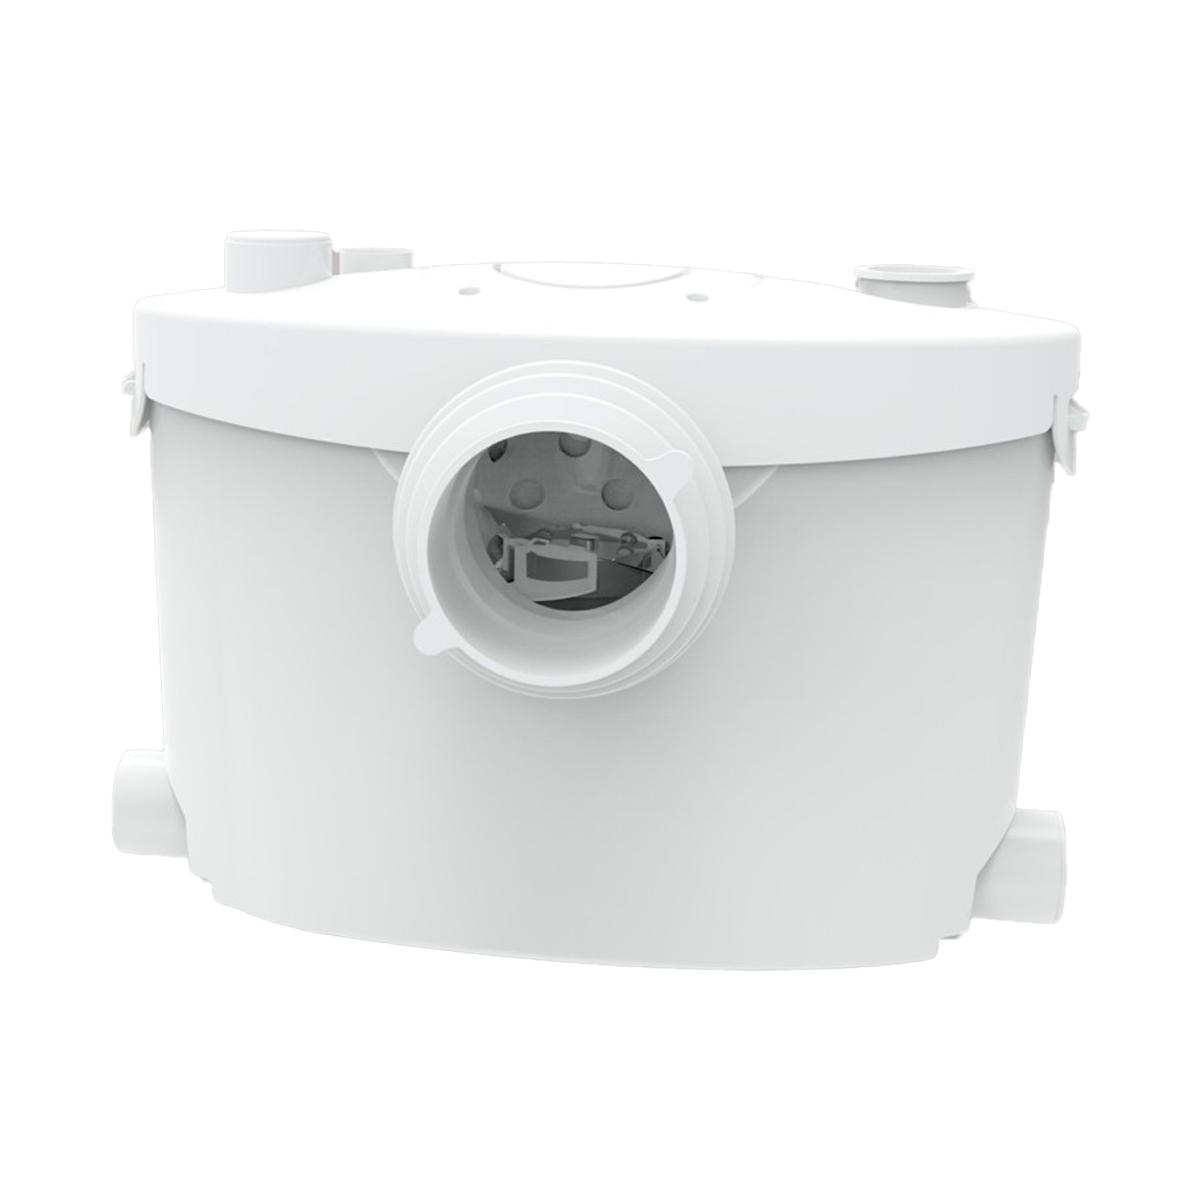 Broyeur sanitaire Maldic SENSE V4 UP pour salle de bain complète avec 4 entrées avec la référence 402 de la marque MALDIC